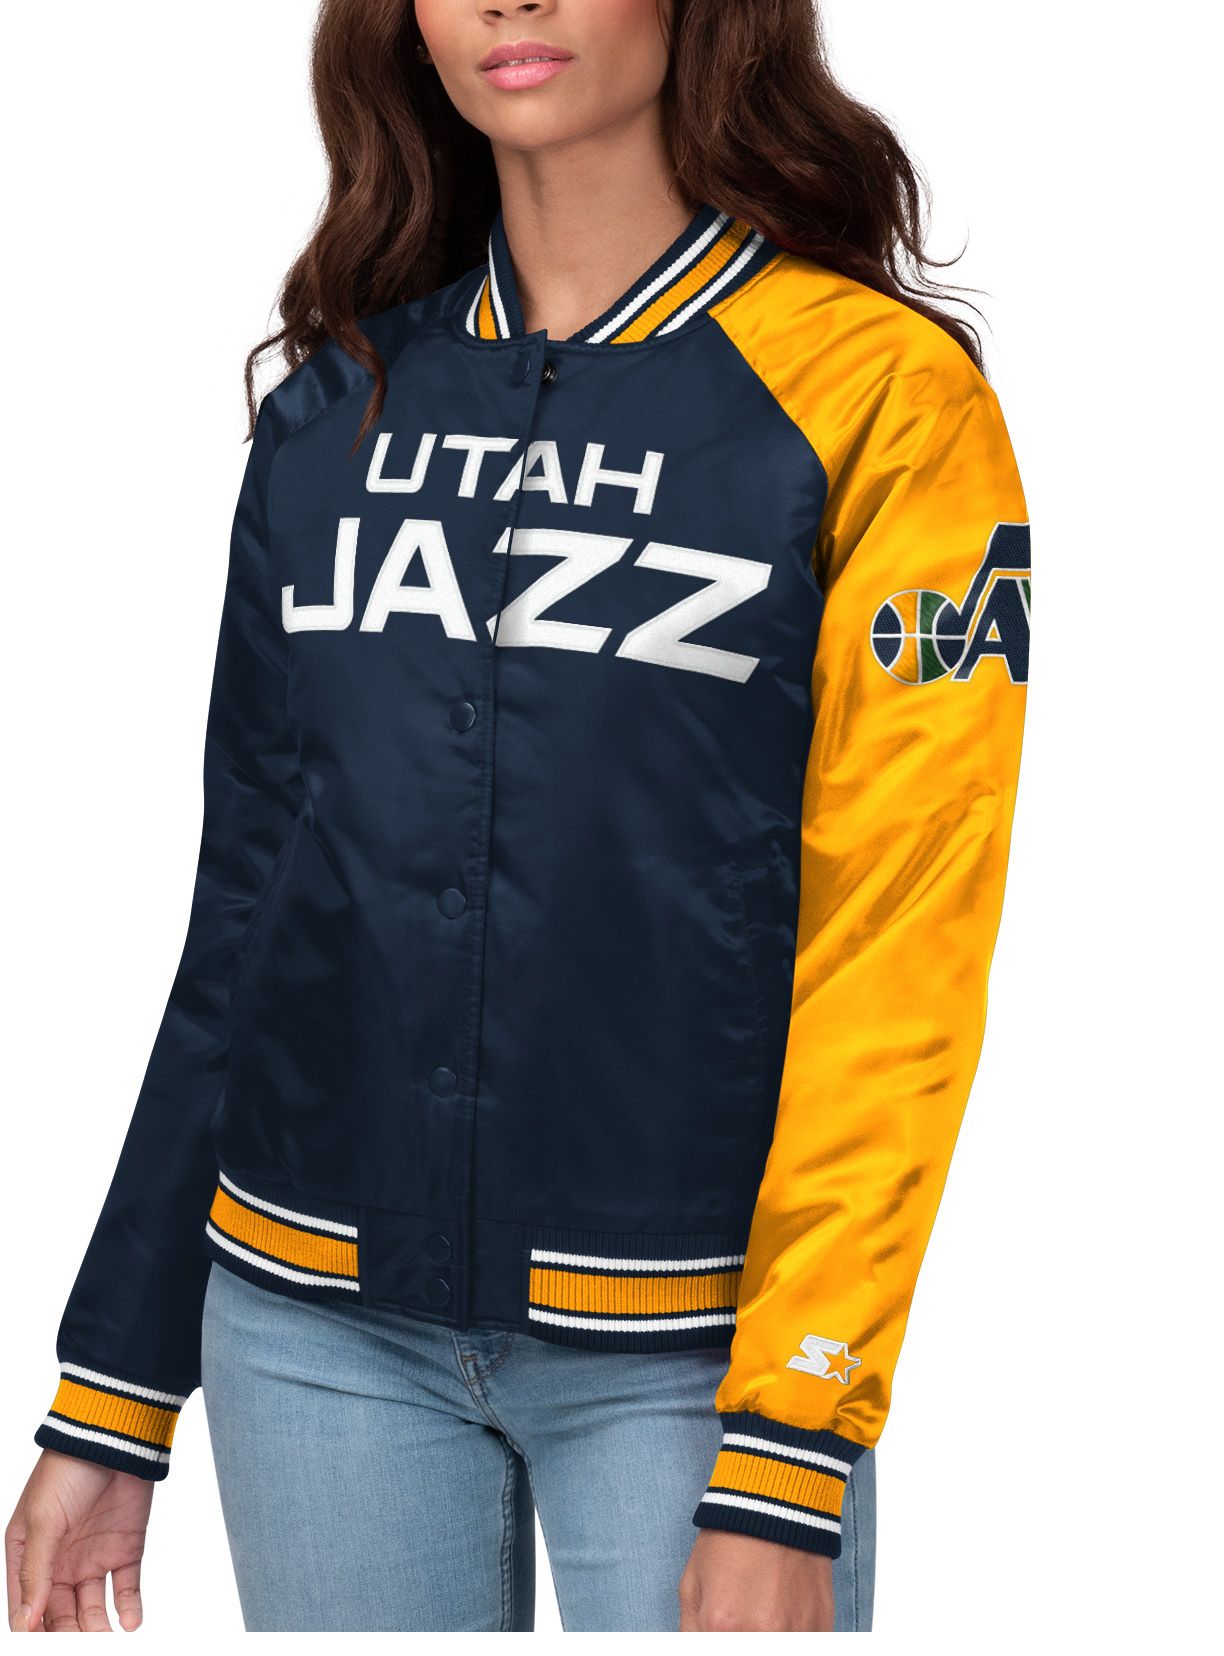 Utah Jazz Women's Apparel | Curbside 